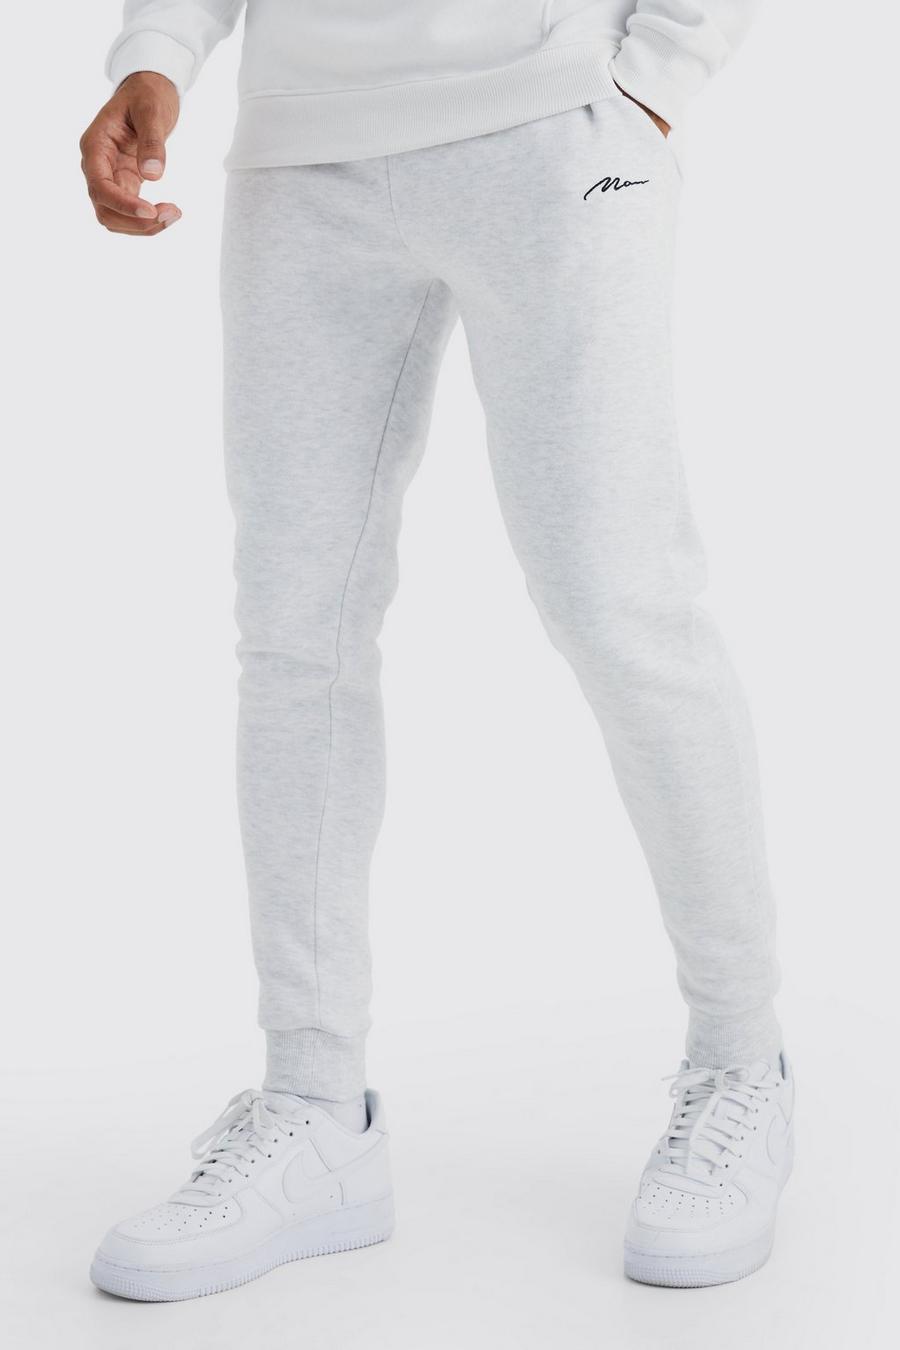 Pantalón deportivo pitillo con firma MAN, Grey marl gris